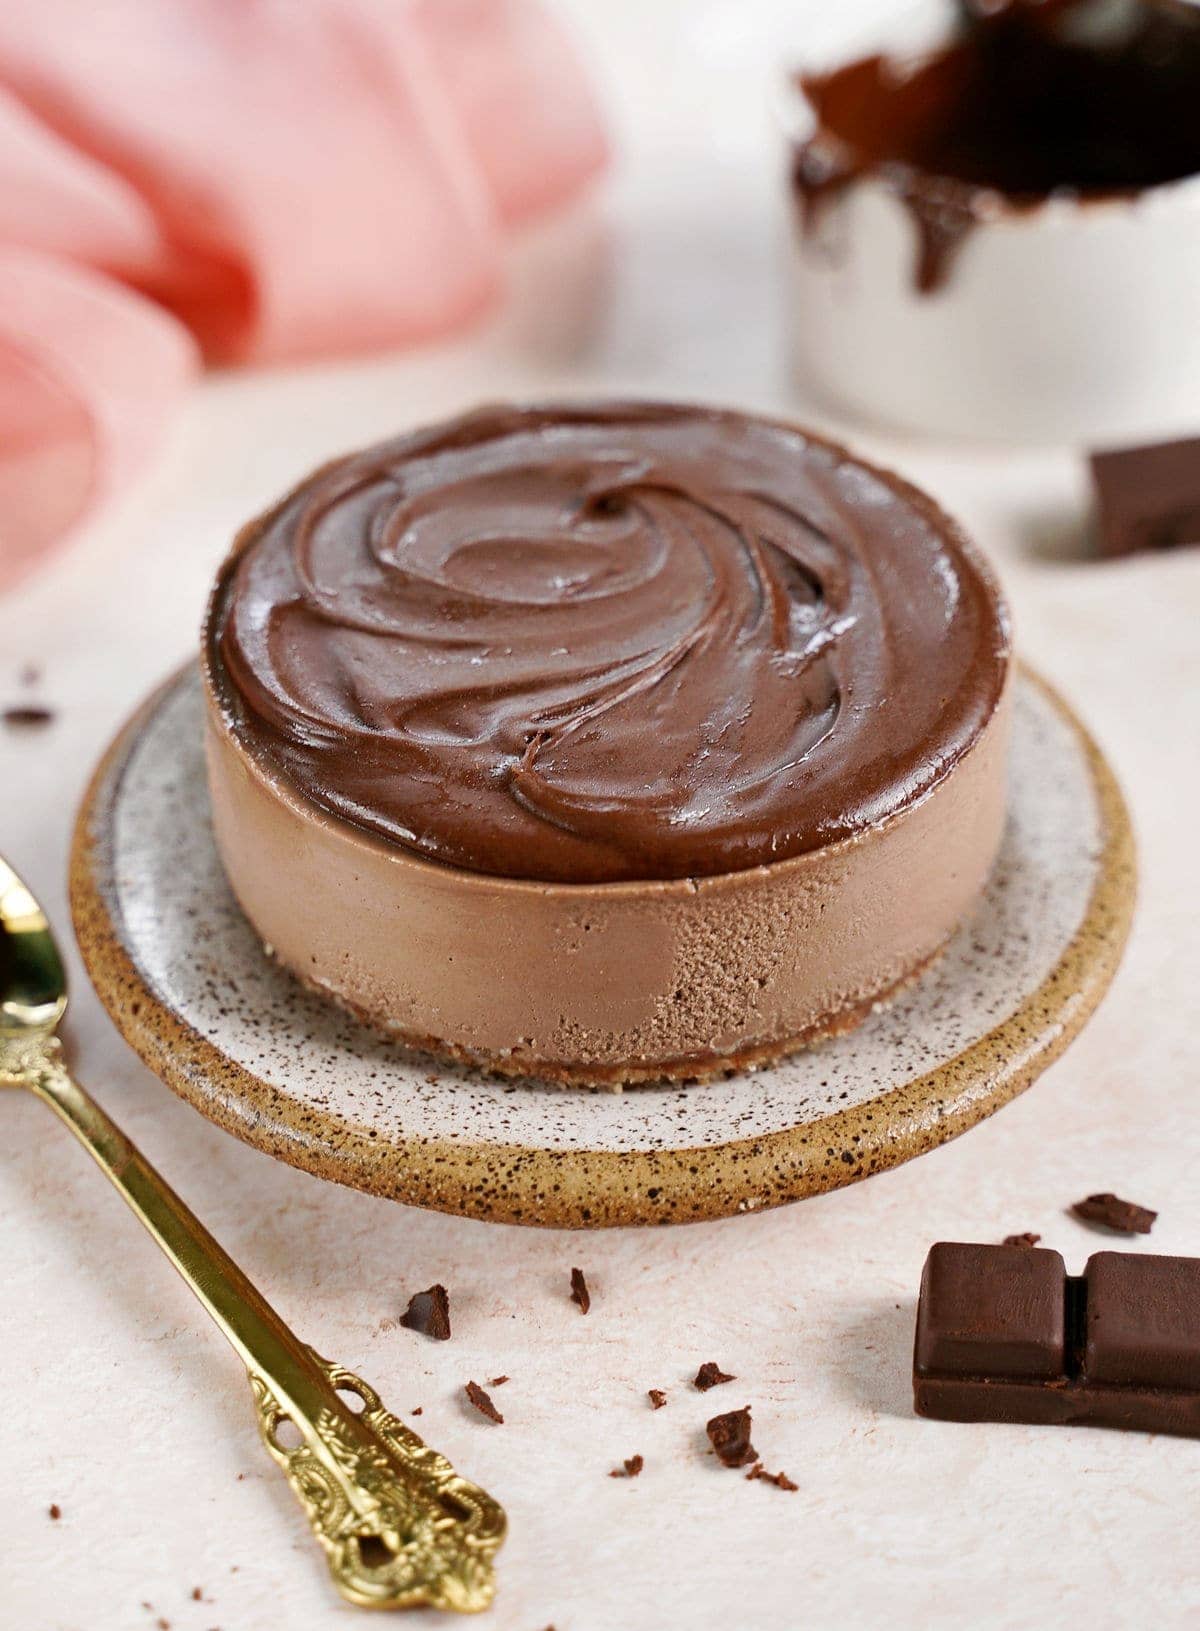 roher kleiner Kuchen mit veganer Schokoladen-Ganache oben drauf